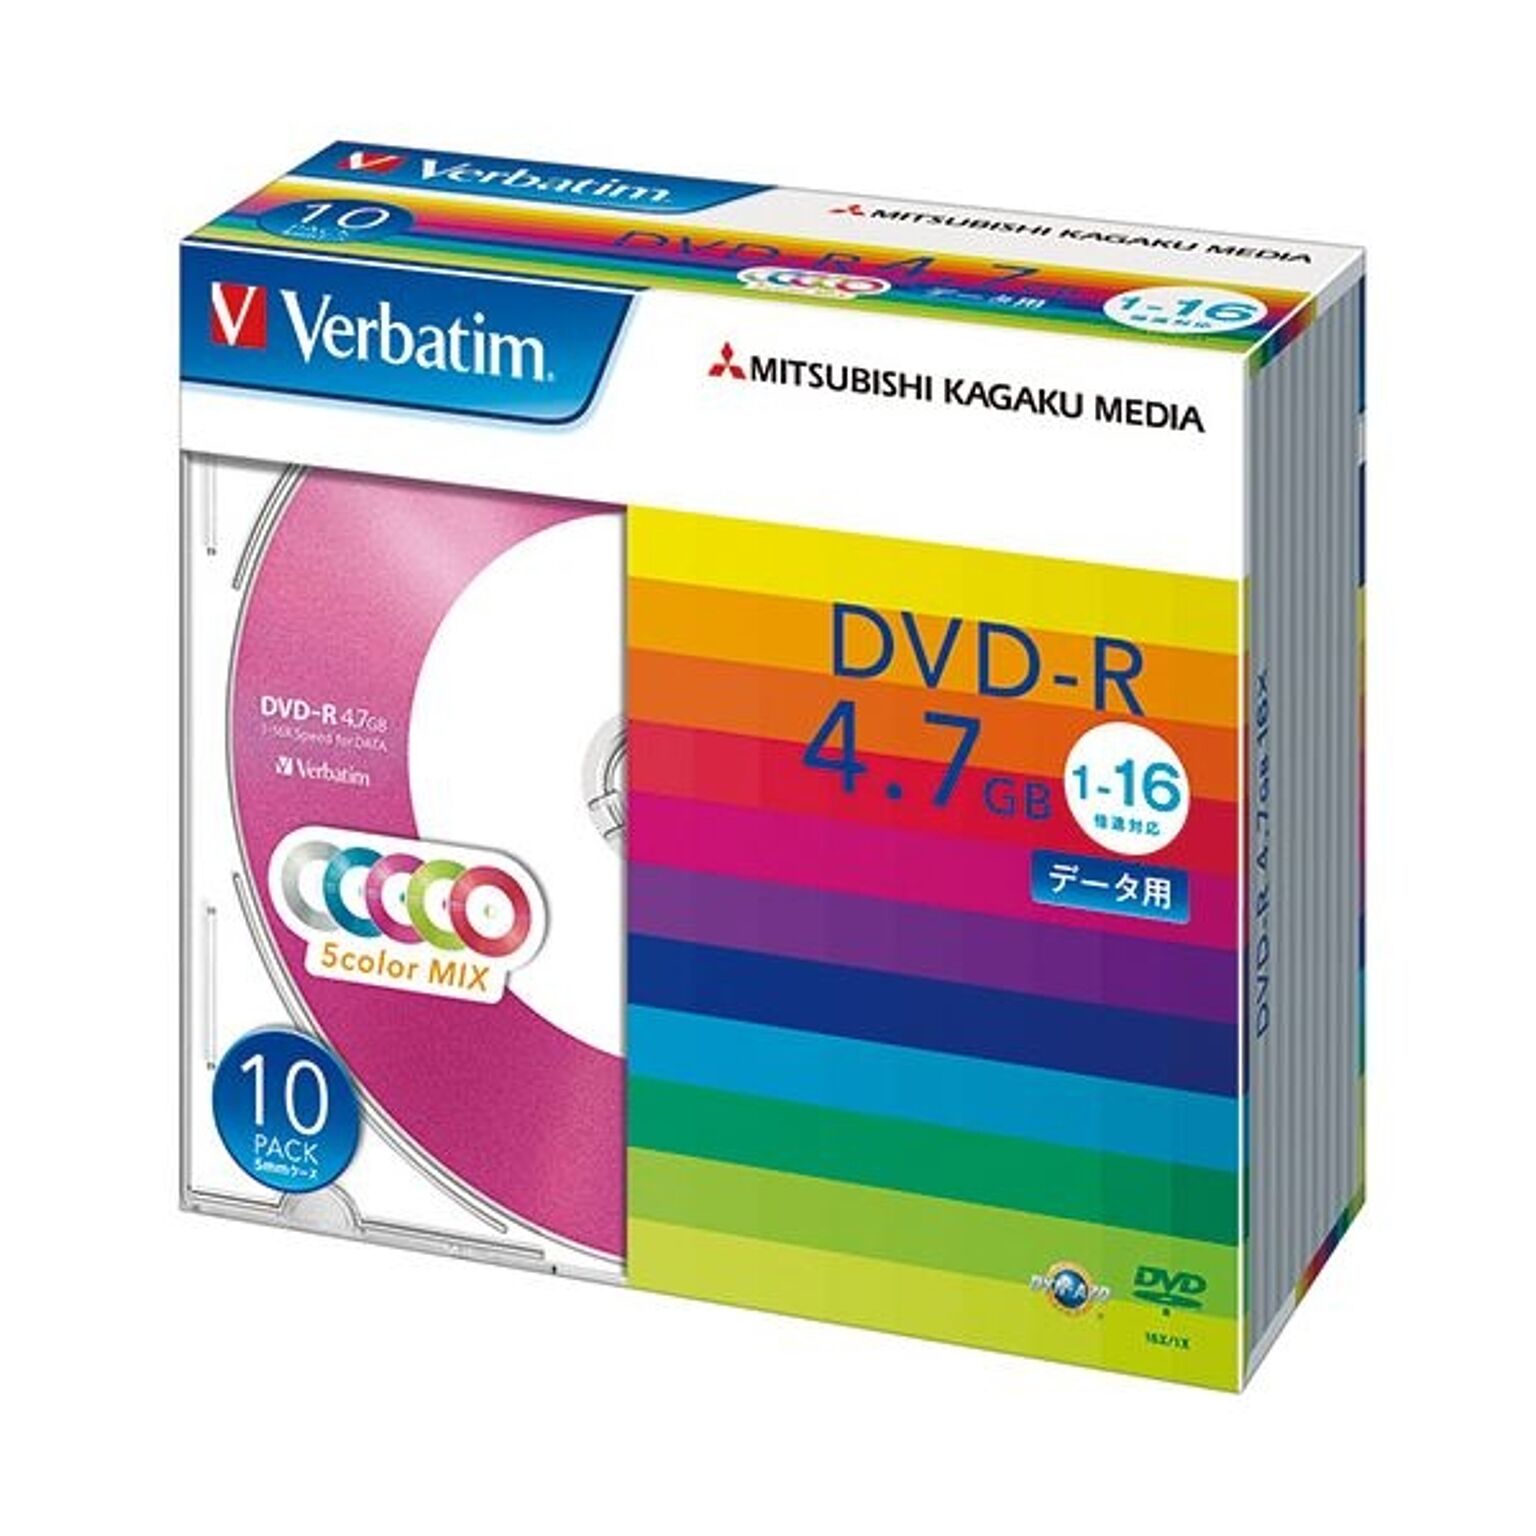 (まとめ) バーベイタム データ用DVD-R4.7GB 1-16倍速 5色カラーMIX 5mmスリムケース DHR47JM10V11パック(10枚:各色2枚) 【×10セット】